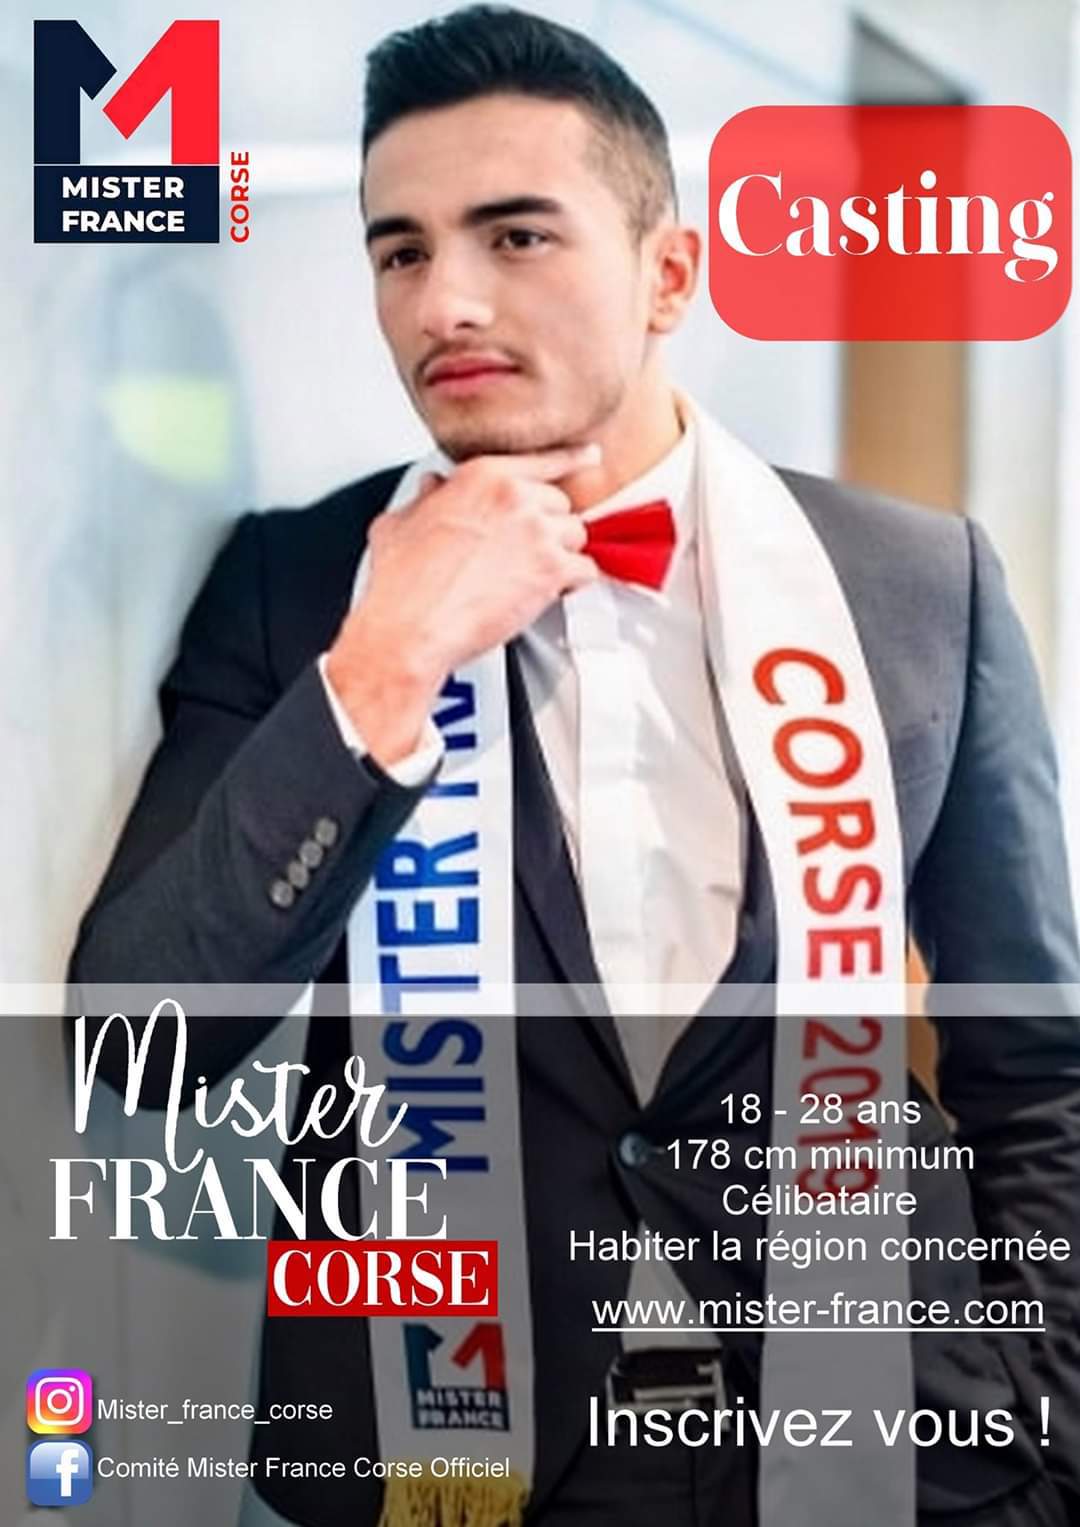 Les inscriptions pour Mister France Corse sont ouvertes